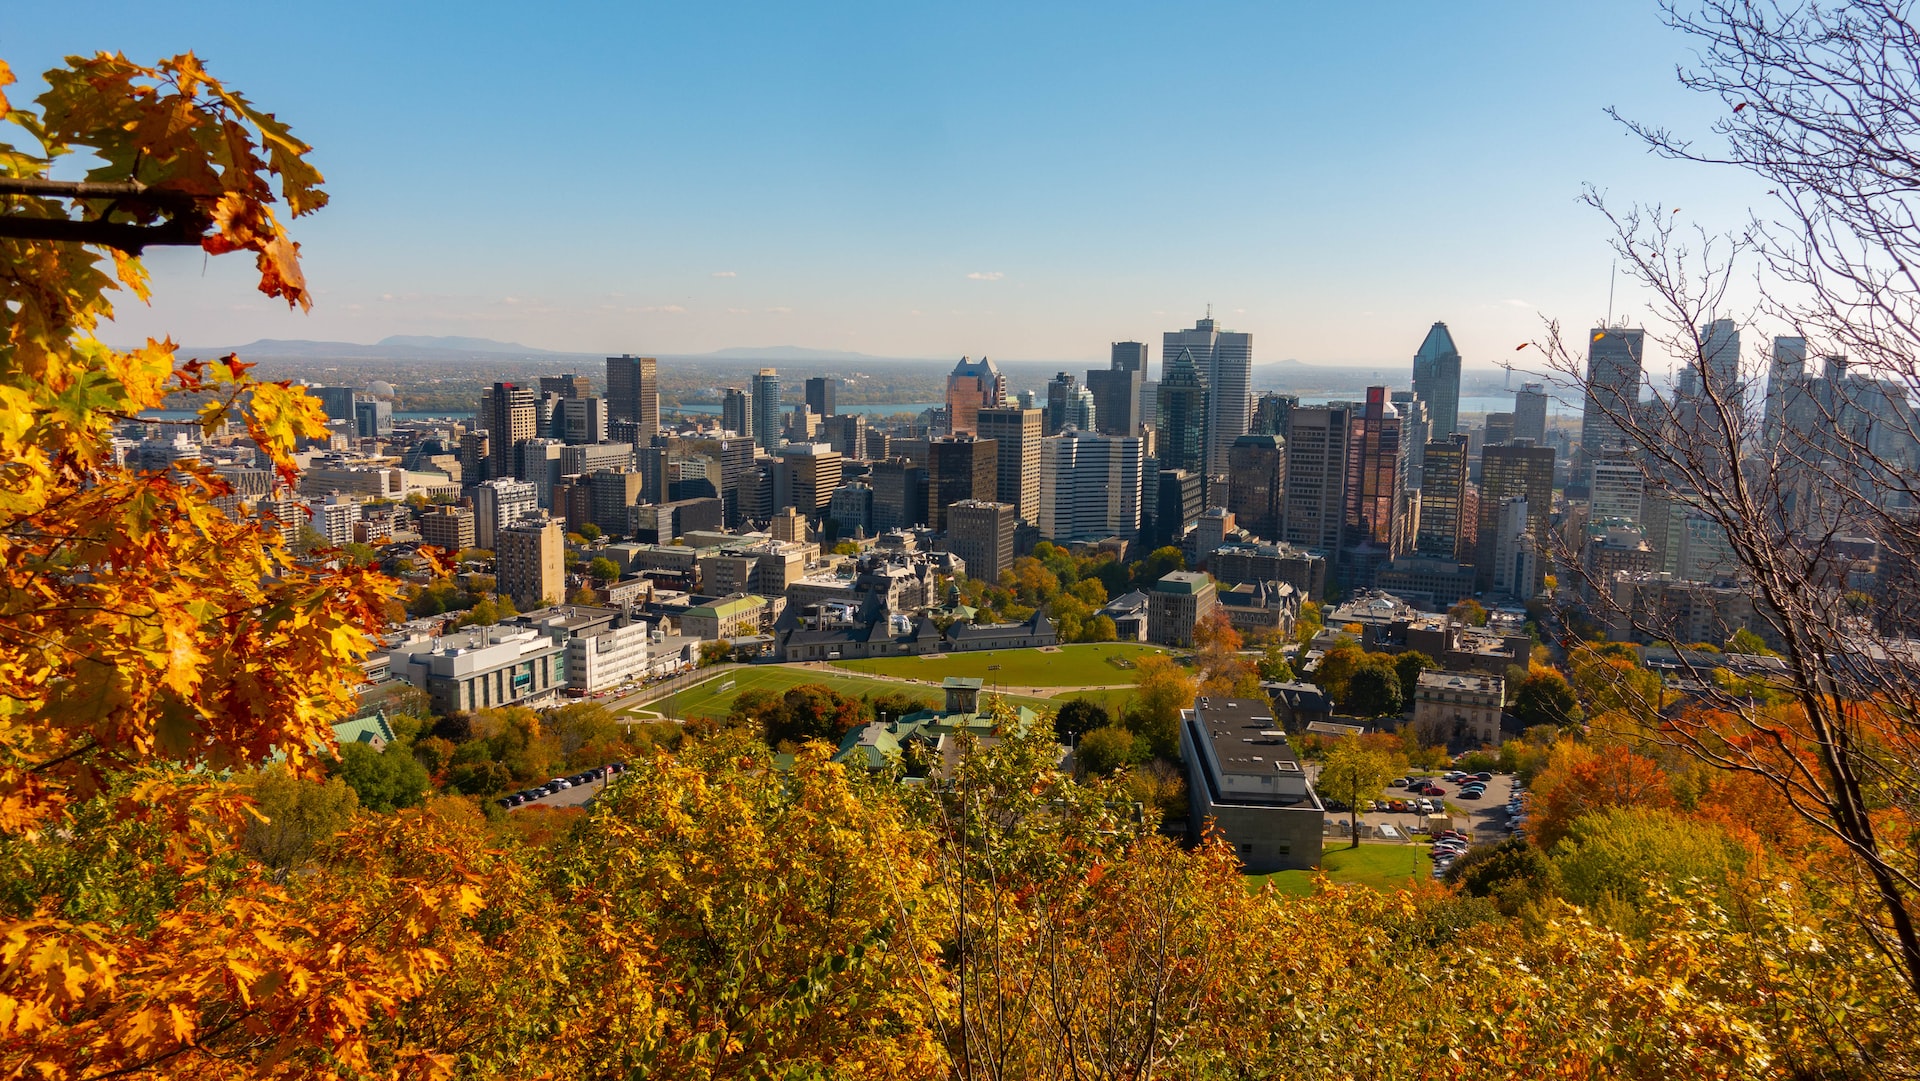 Mount Royal Park, Montréal, Canada by Rich Martello on Unsplash